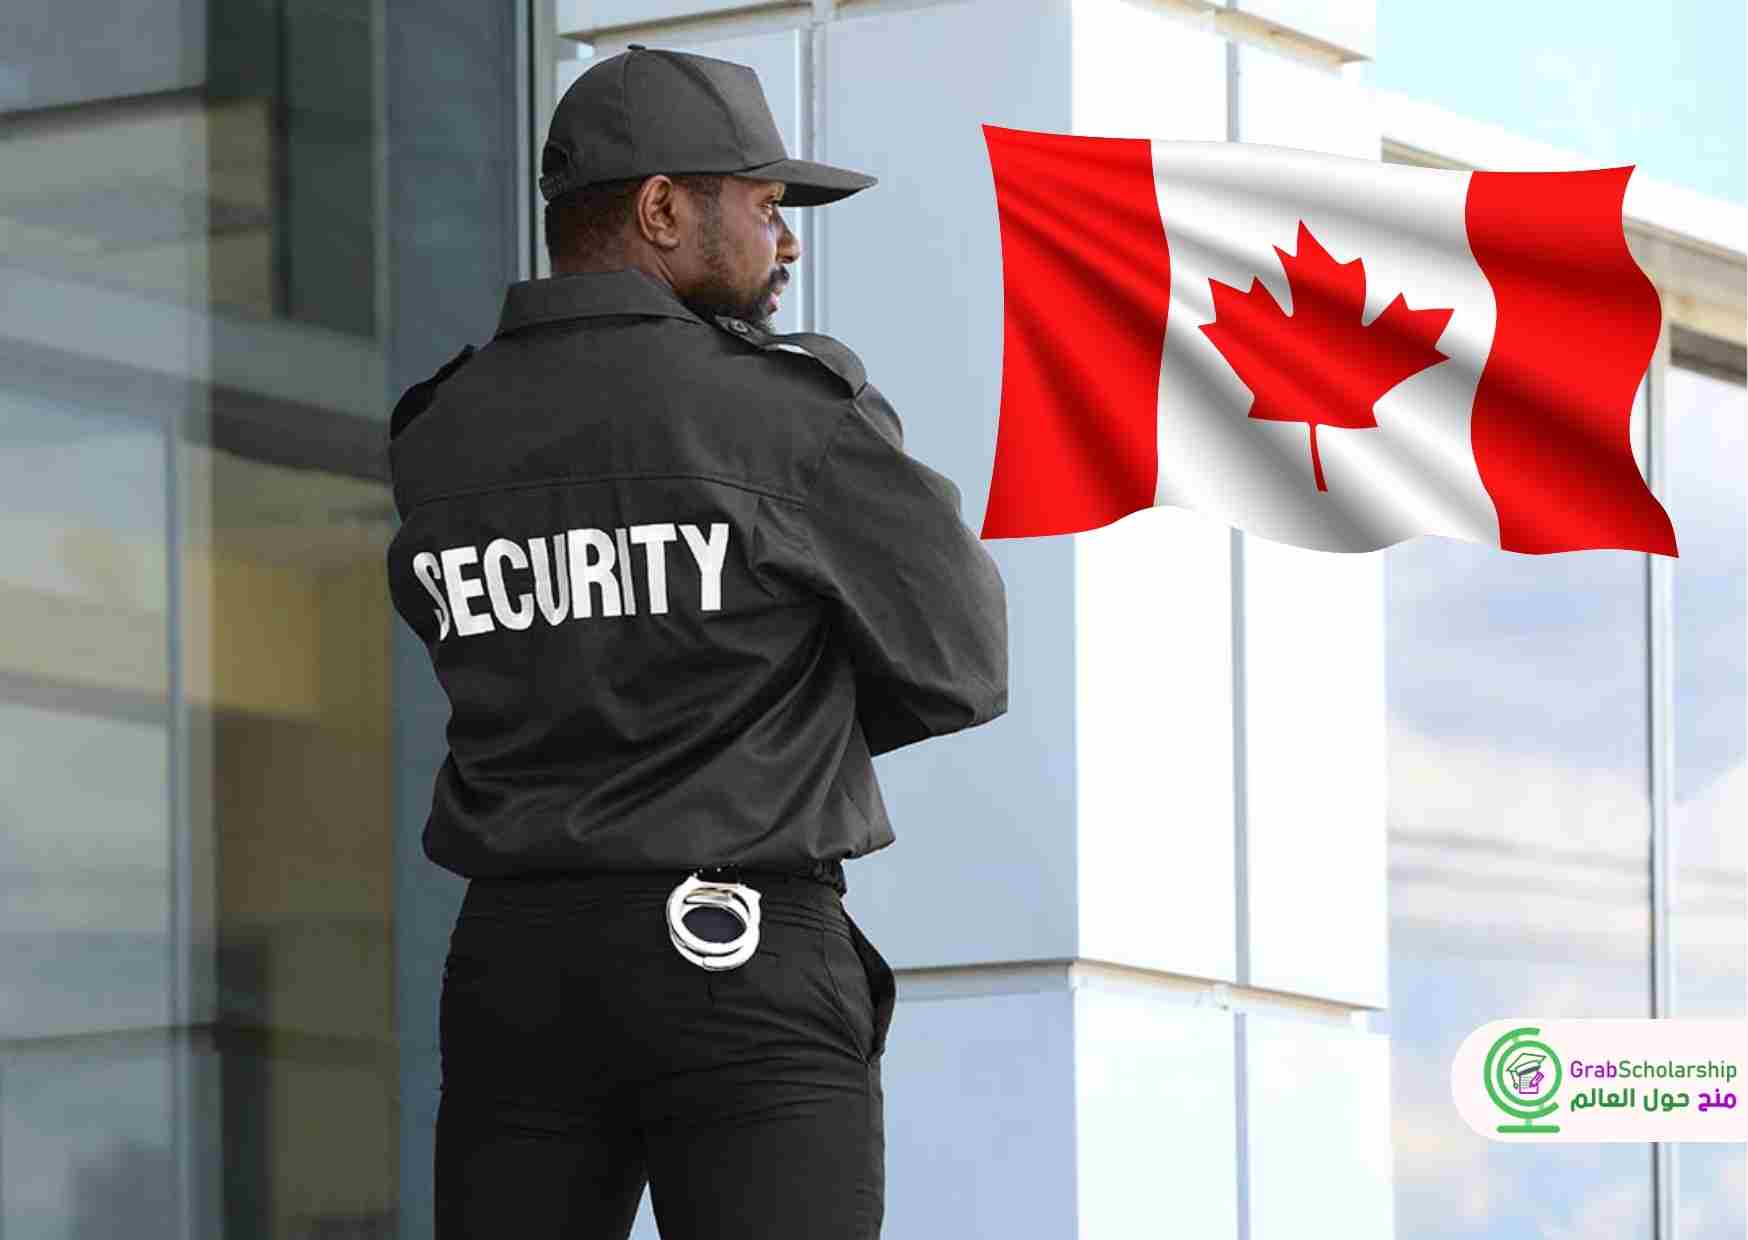 وظائف أمن في كندا براتب 3500 دولار كندي شهريًا